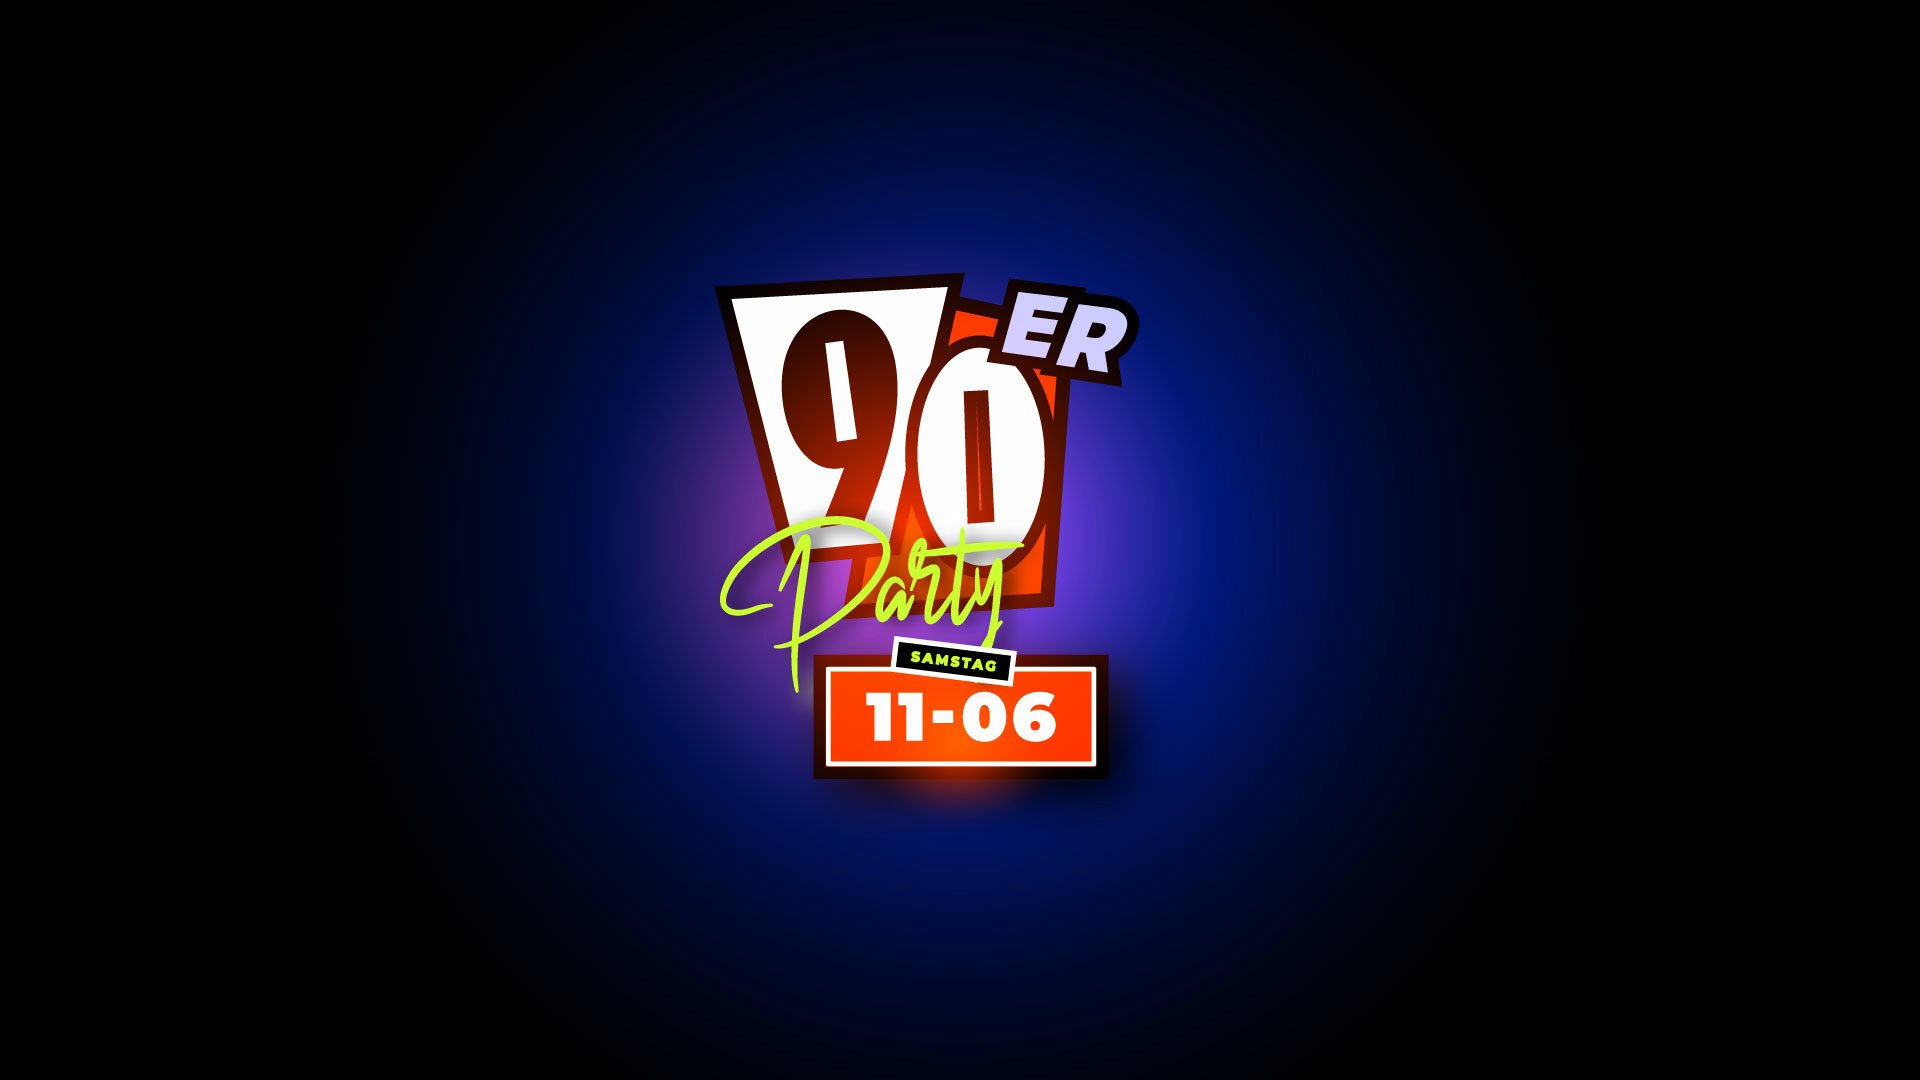 90er Party - 11.06.2022 - Club No4